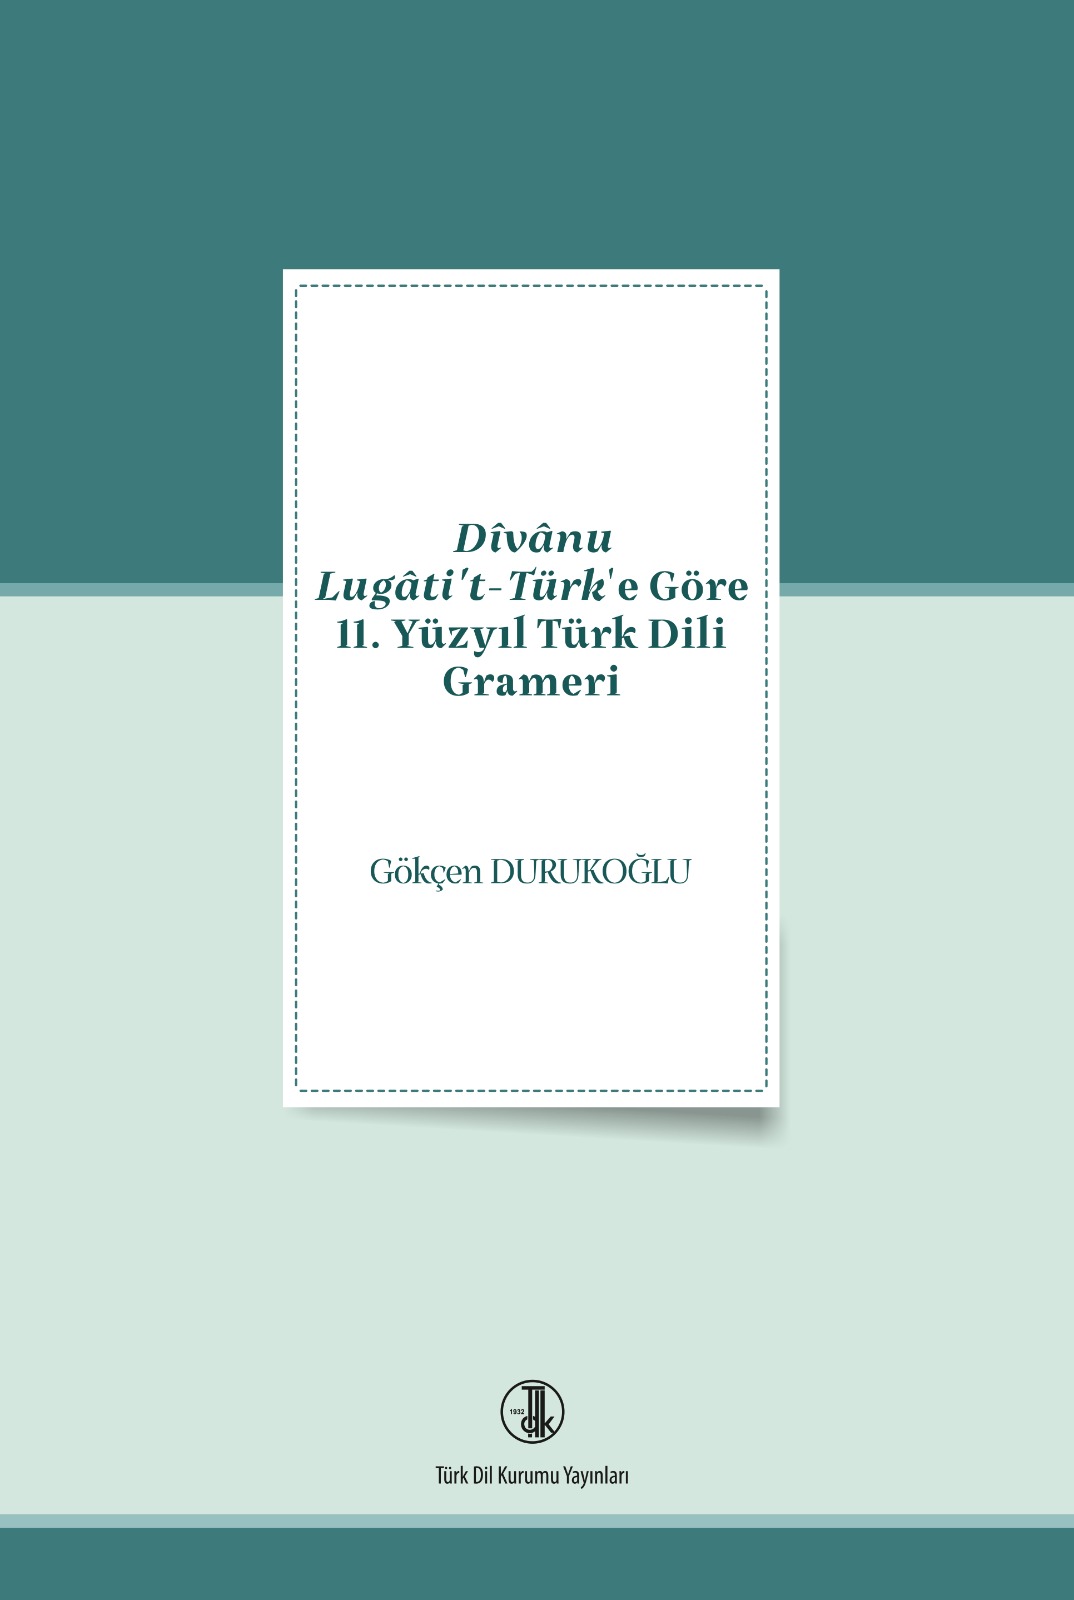 Dîvânu Lugâti't-Türk'e Göre 11. Yüzyıl Türk Dili Grameri, 2022